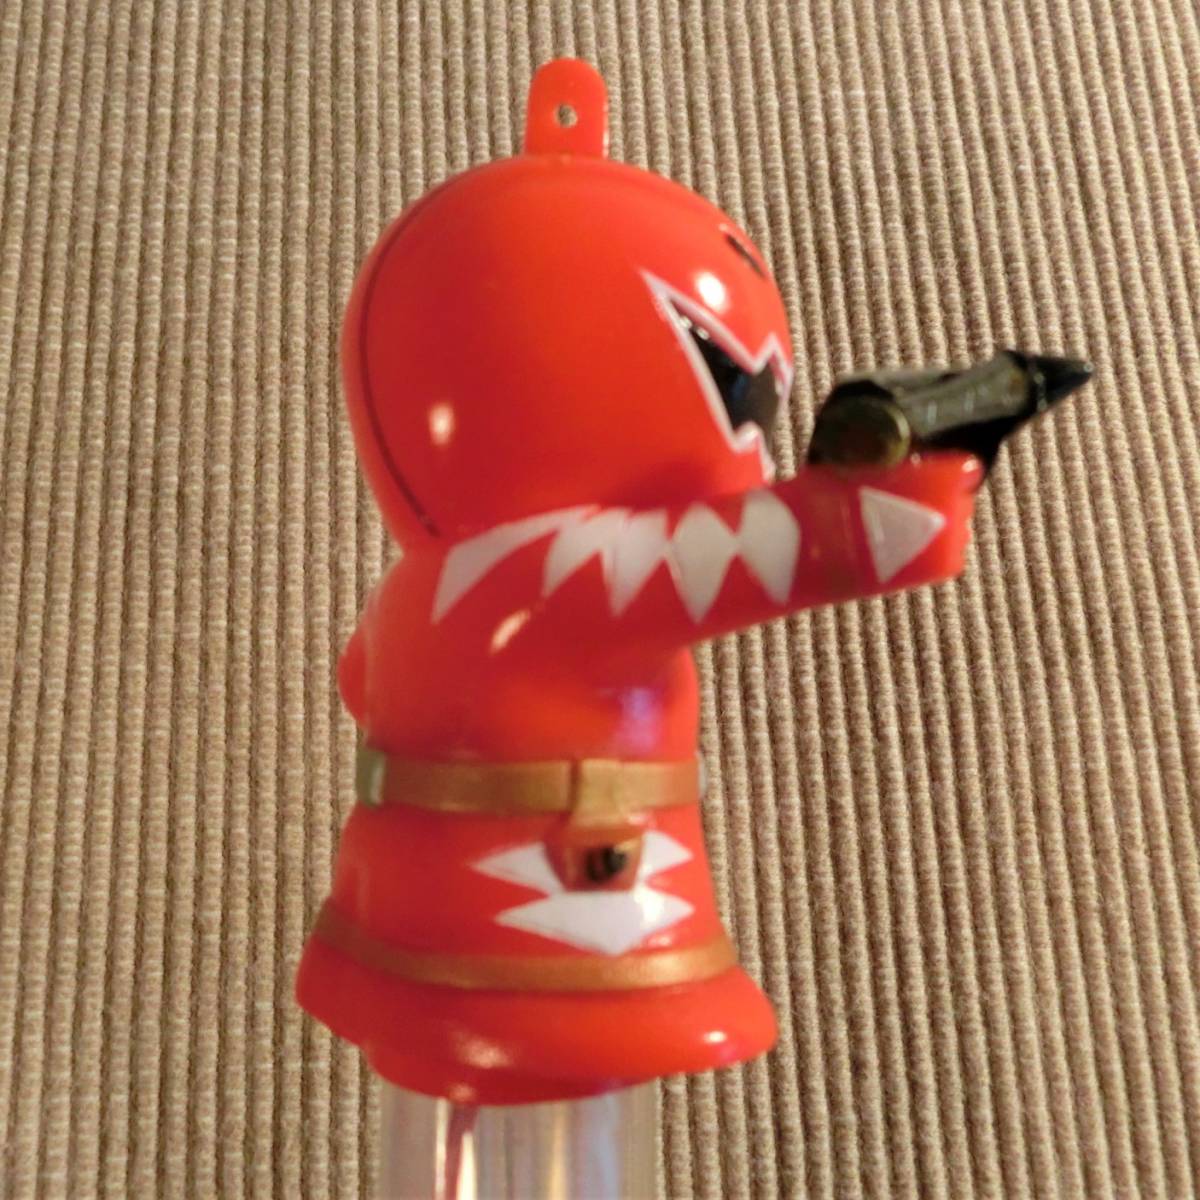  Kirakira светится герой палочка aba Ranger aba красный неиспользуемый товар редкость редкий игрушка фигурка свет мак восток .